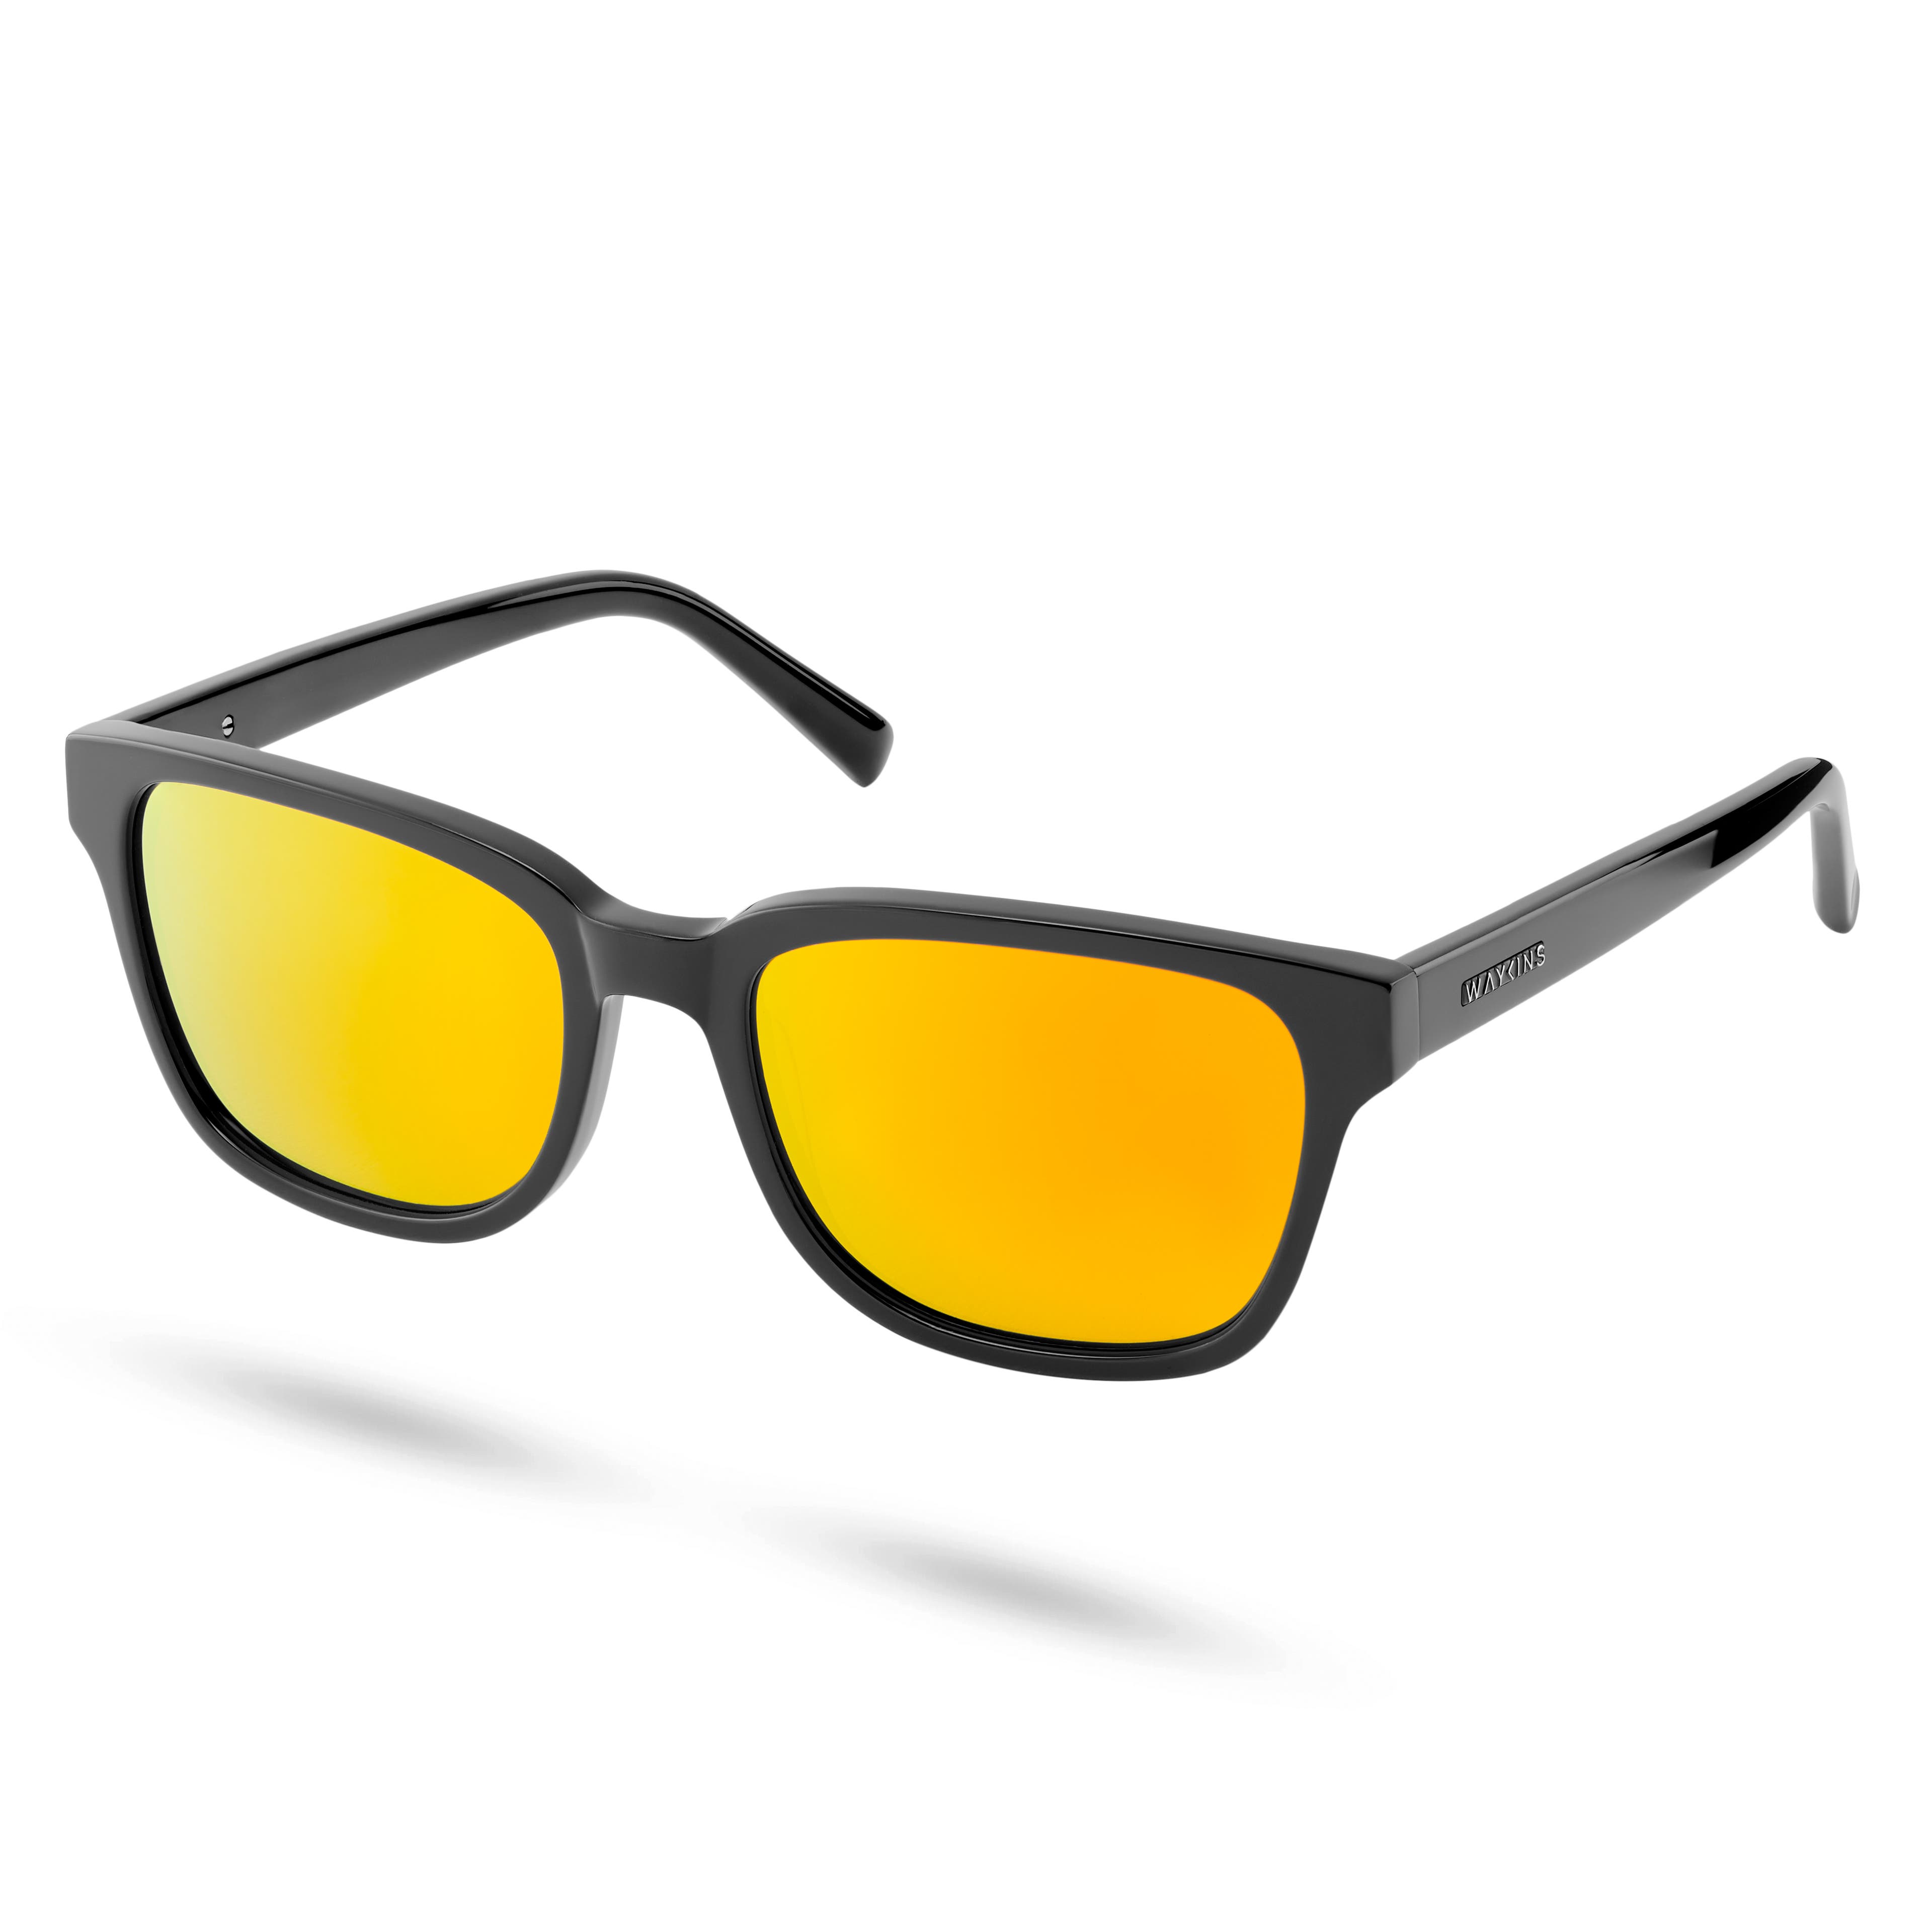 Čierne polarizačné slnečné okuliare Wilmer Thea so žlto-oranžovými zrkadlovými šošovkami